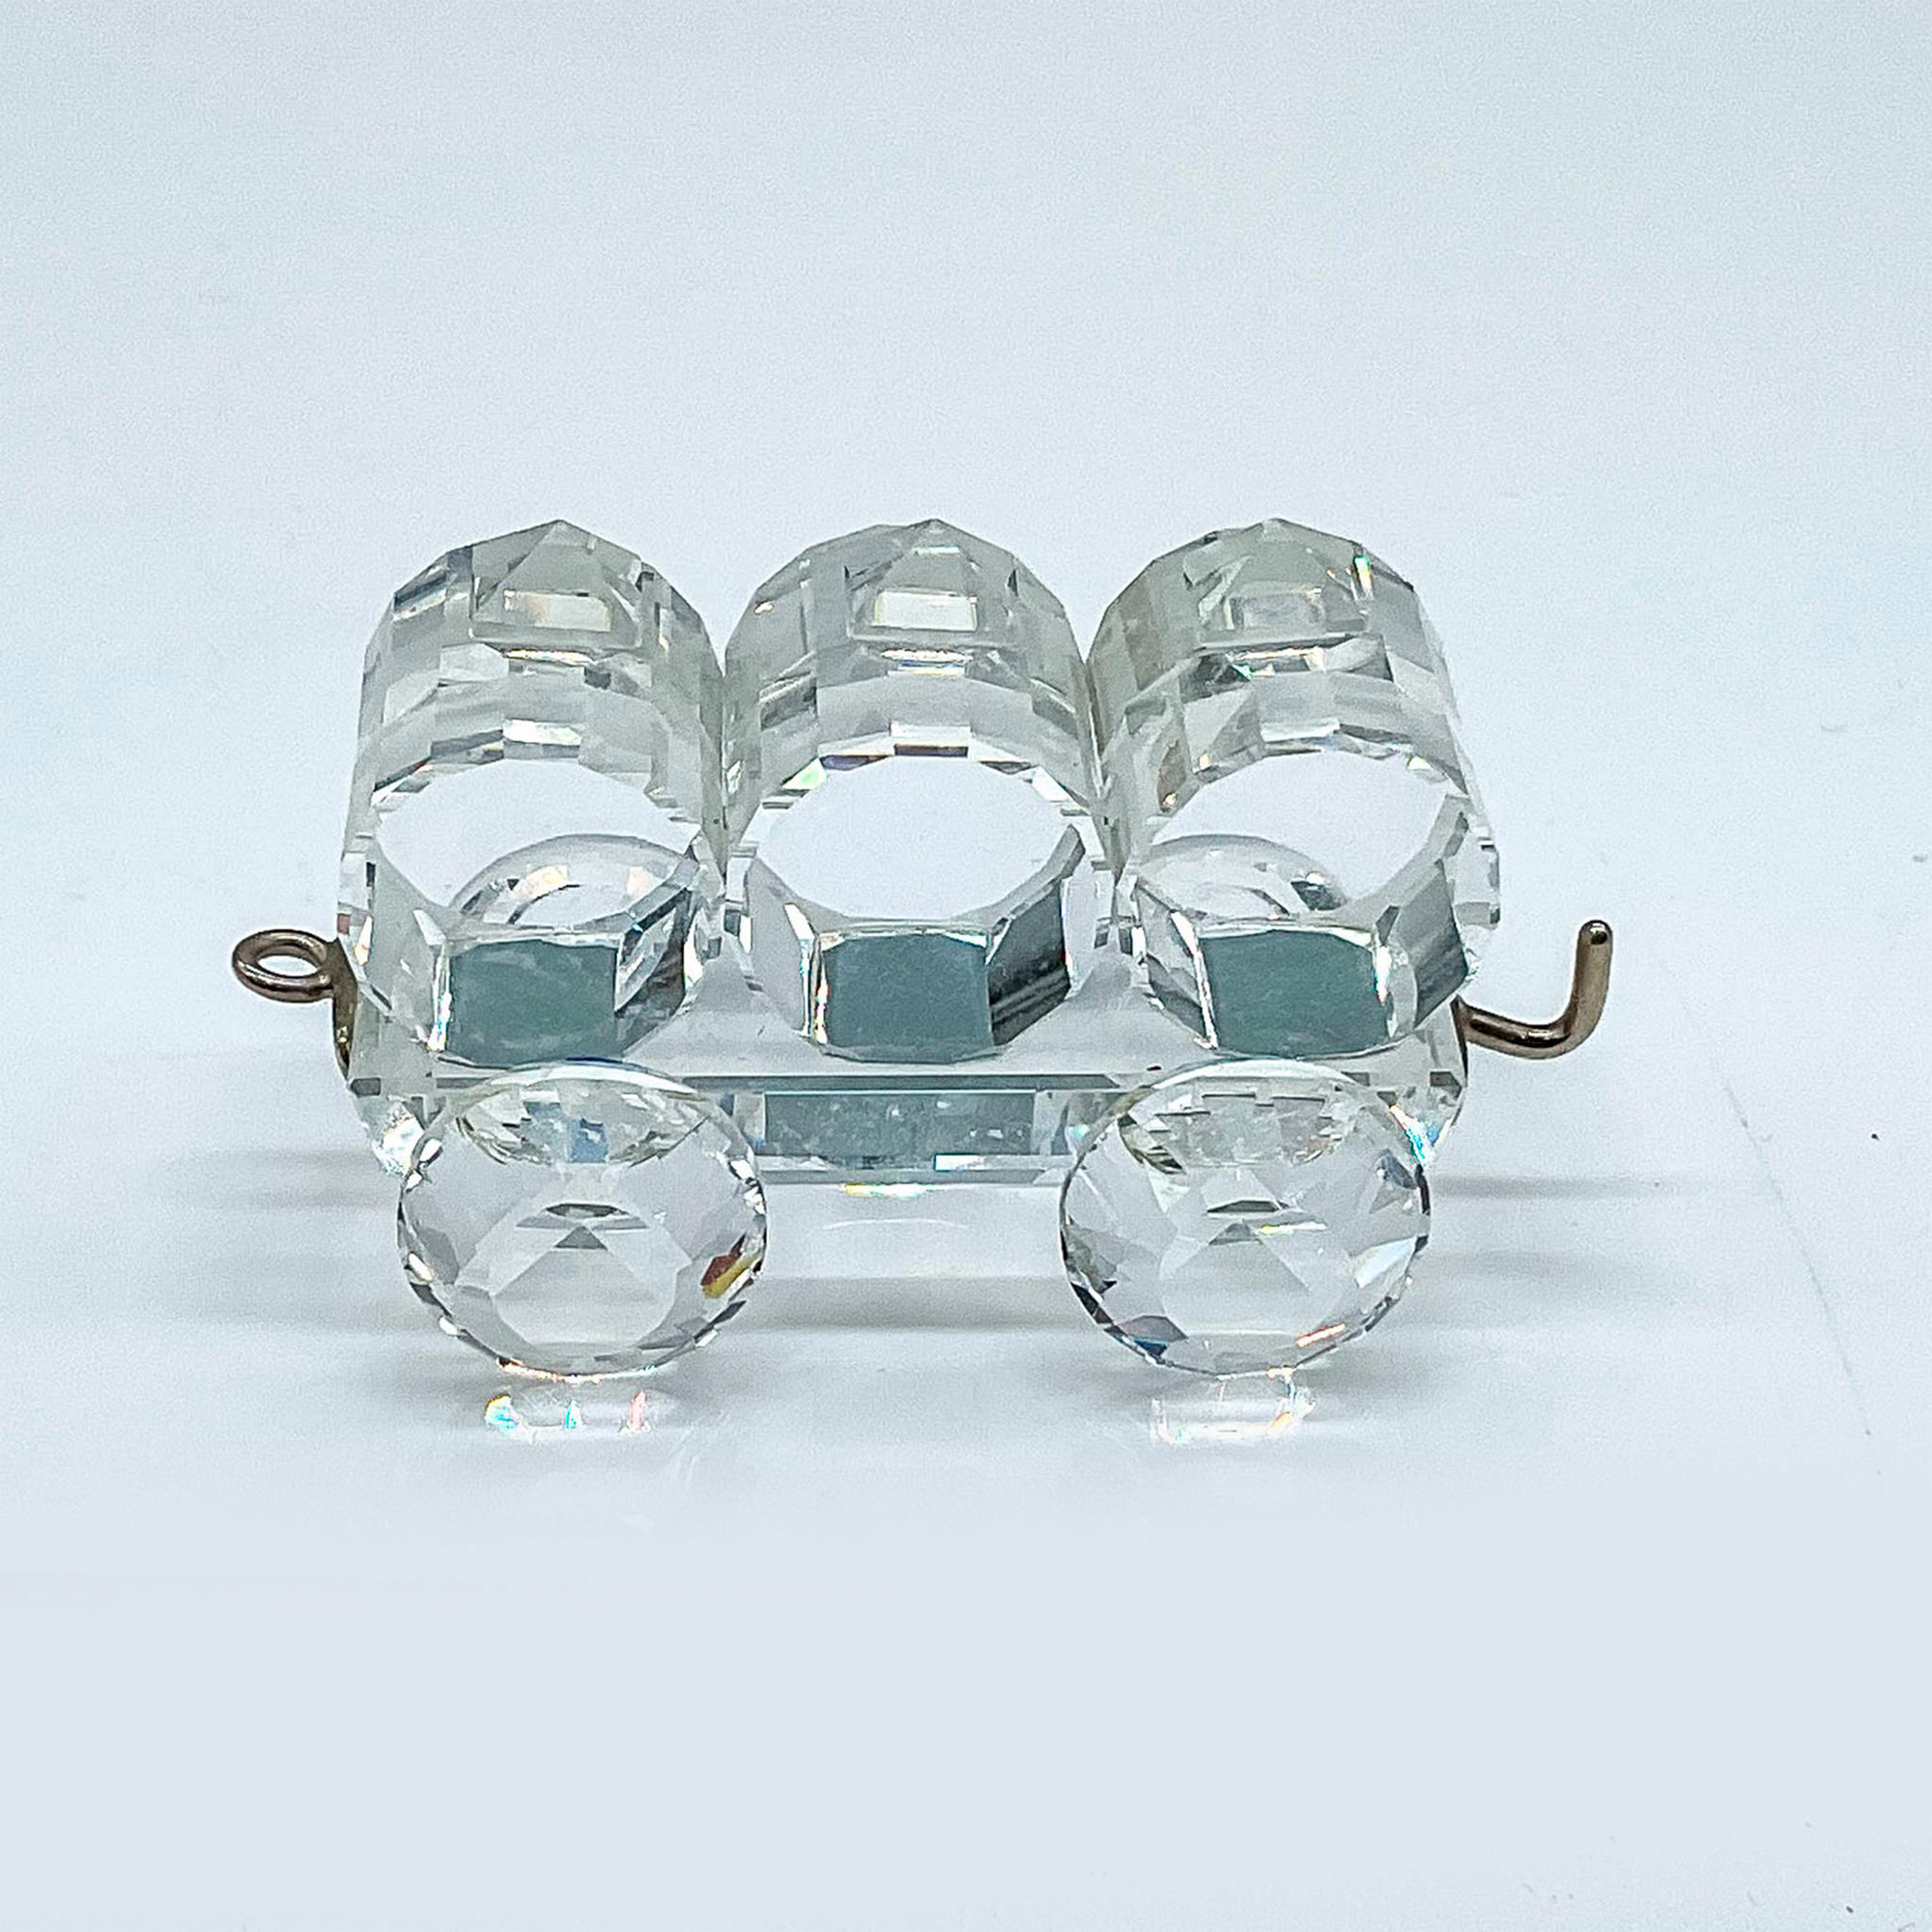 Swarovski Silver Crystal Figurine, Petrol Wagon Train Car - Image 2 of 4